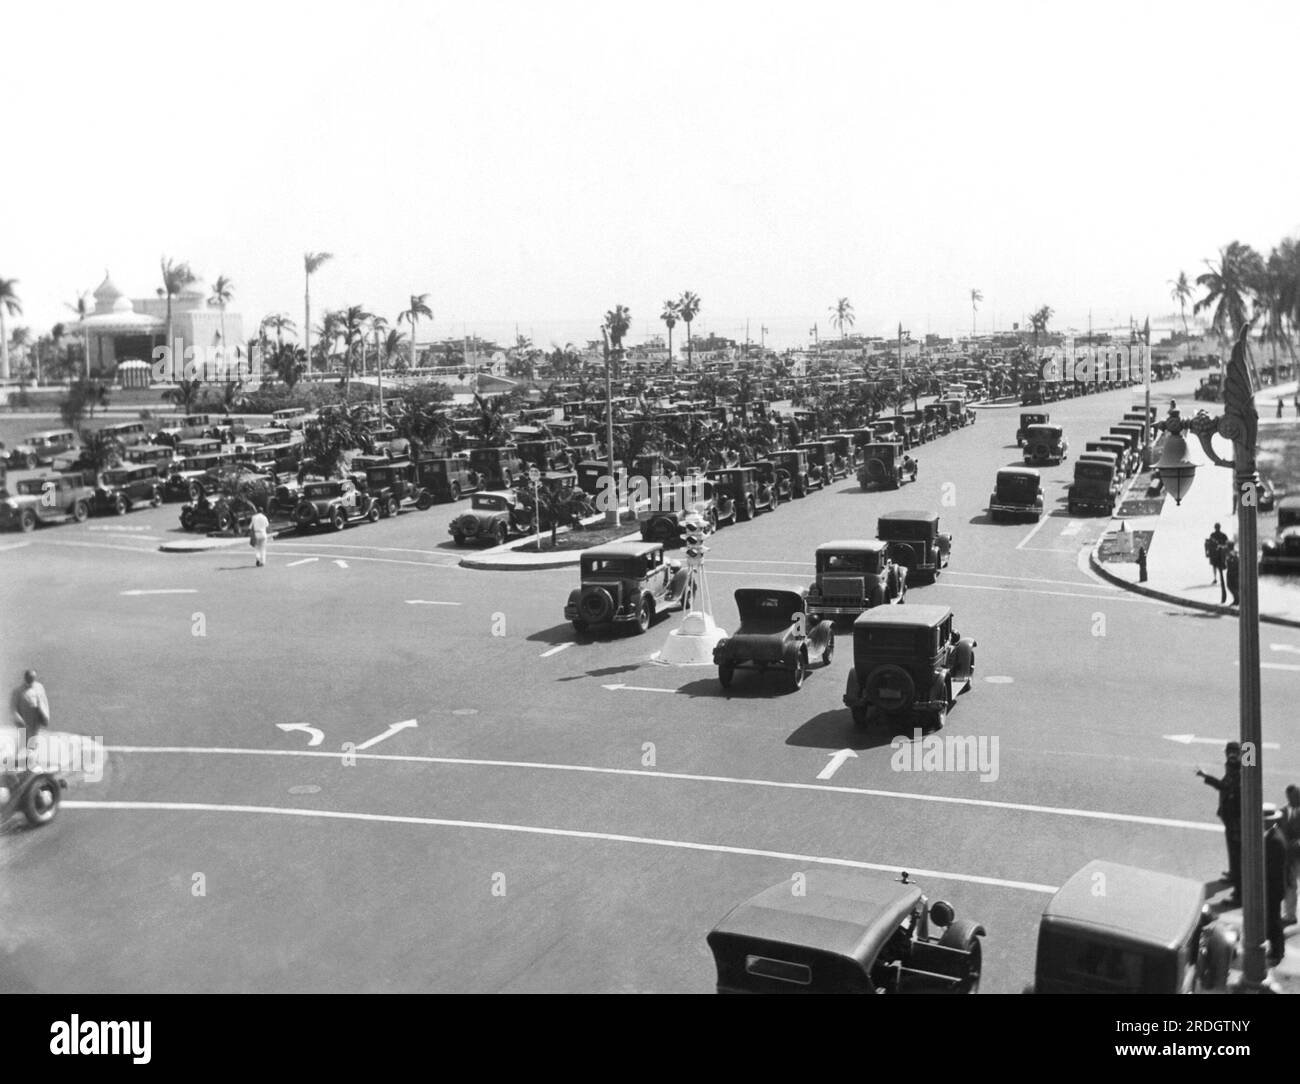 Miami, Floride : le 1929 Biscayne Boulevard regorge de voitures de fans venus voir le match de boxe poids lourds Young Stribling vesus Jack Sharkey. Banque D'Images